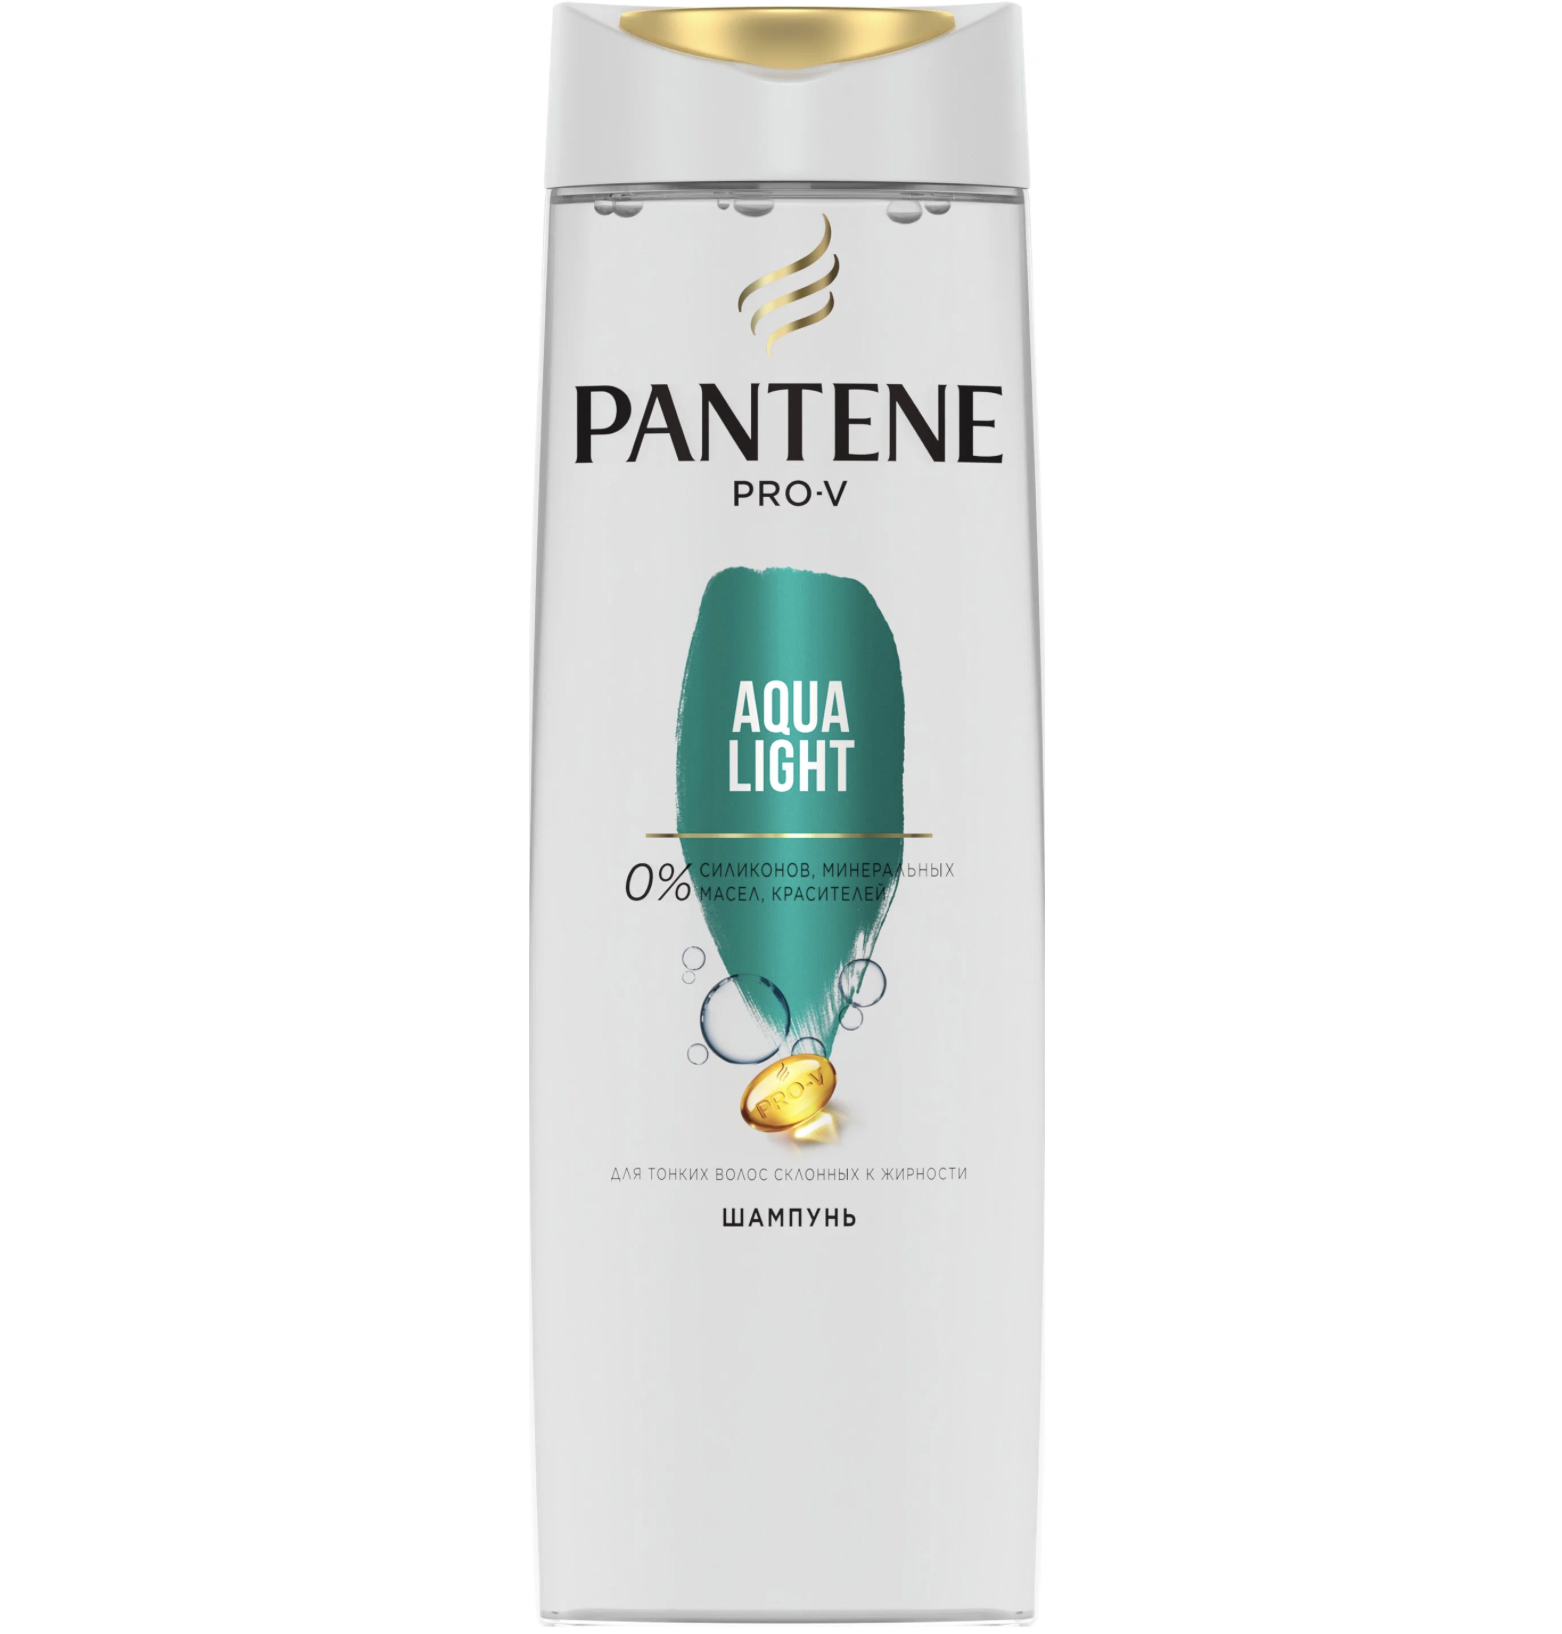    / Pantene Pro-V -  Aqua Light  ,     400 